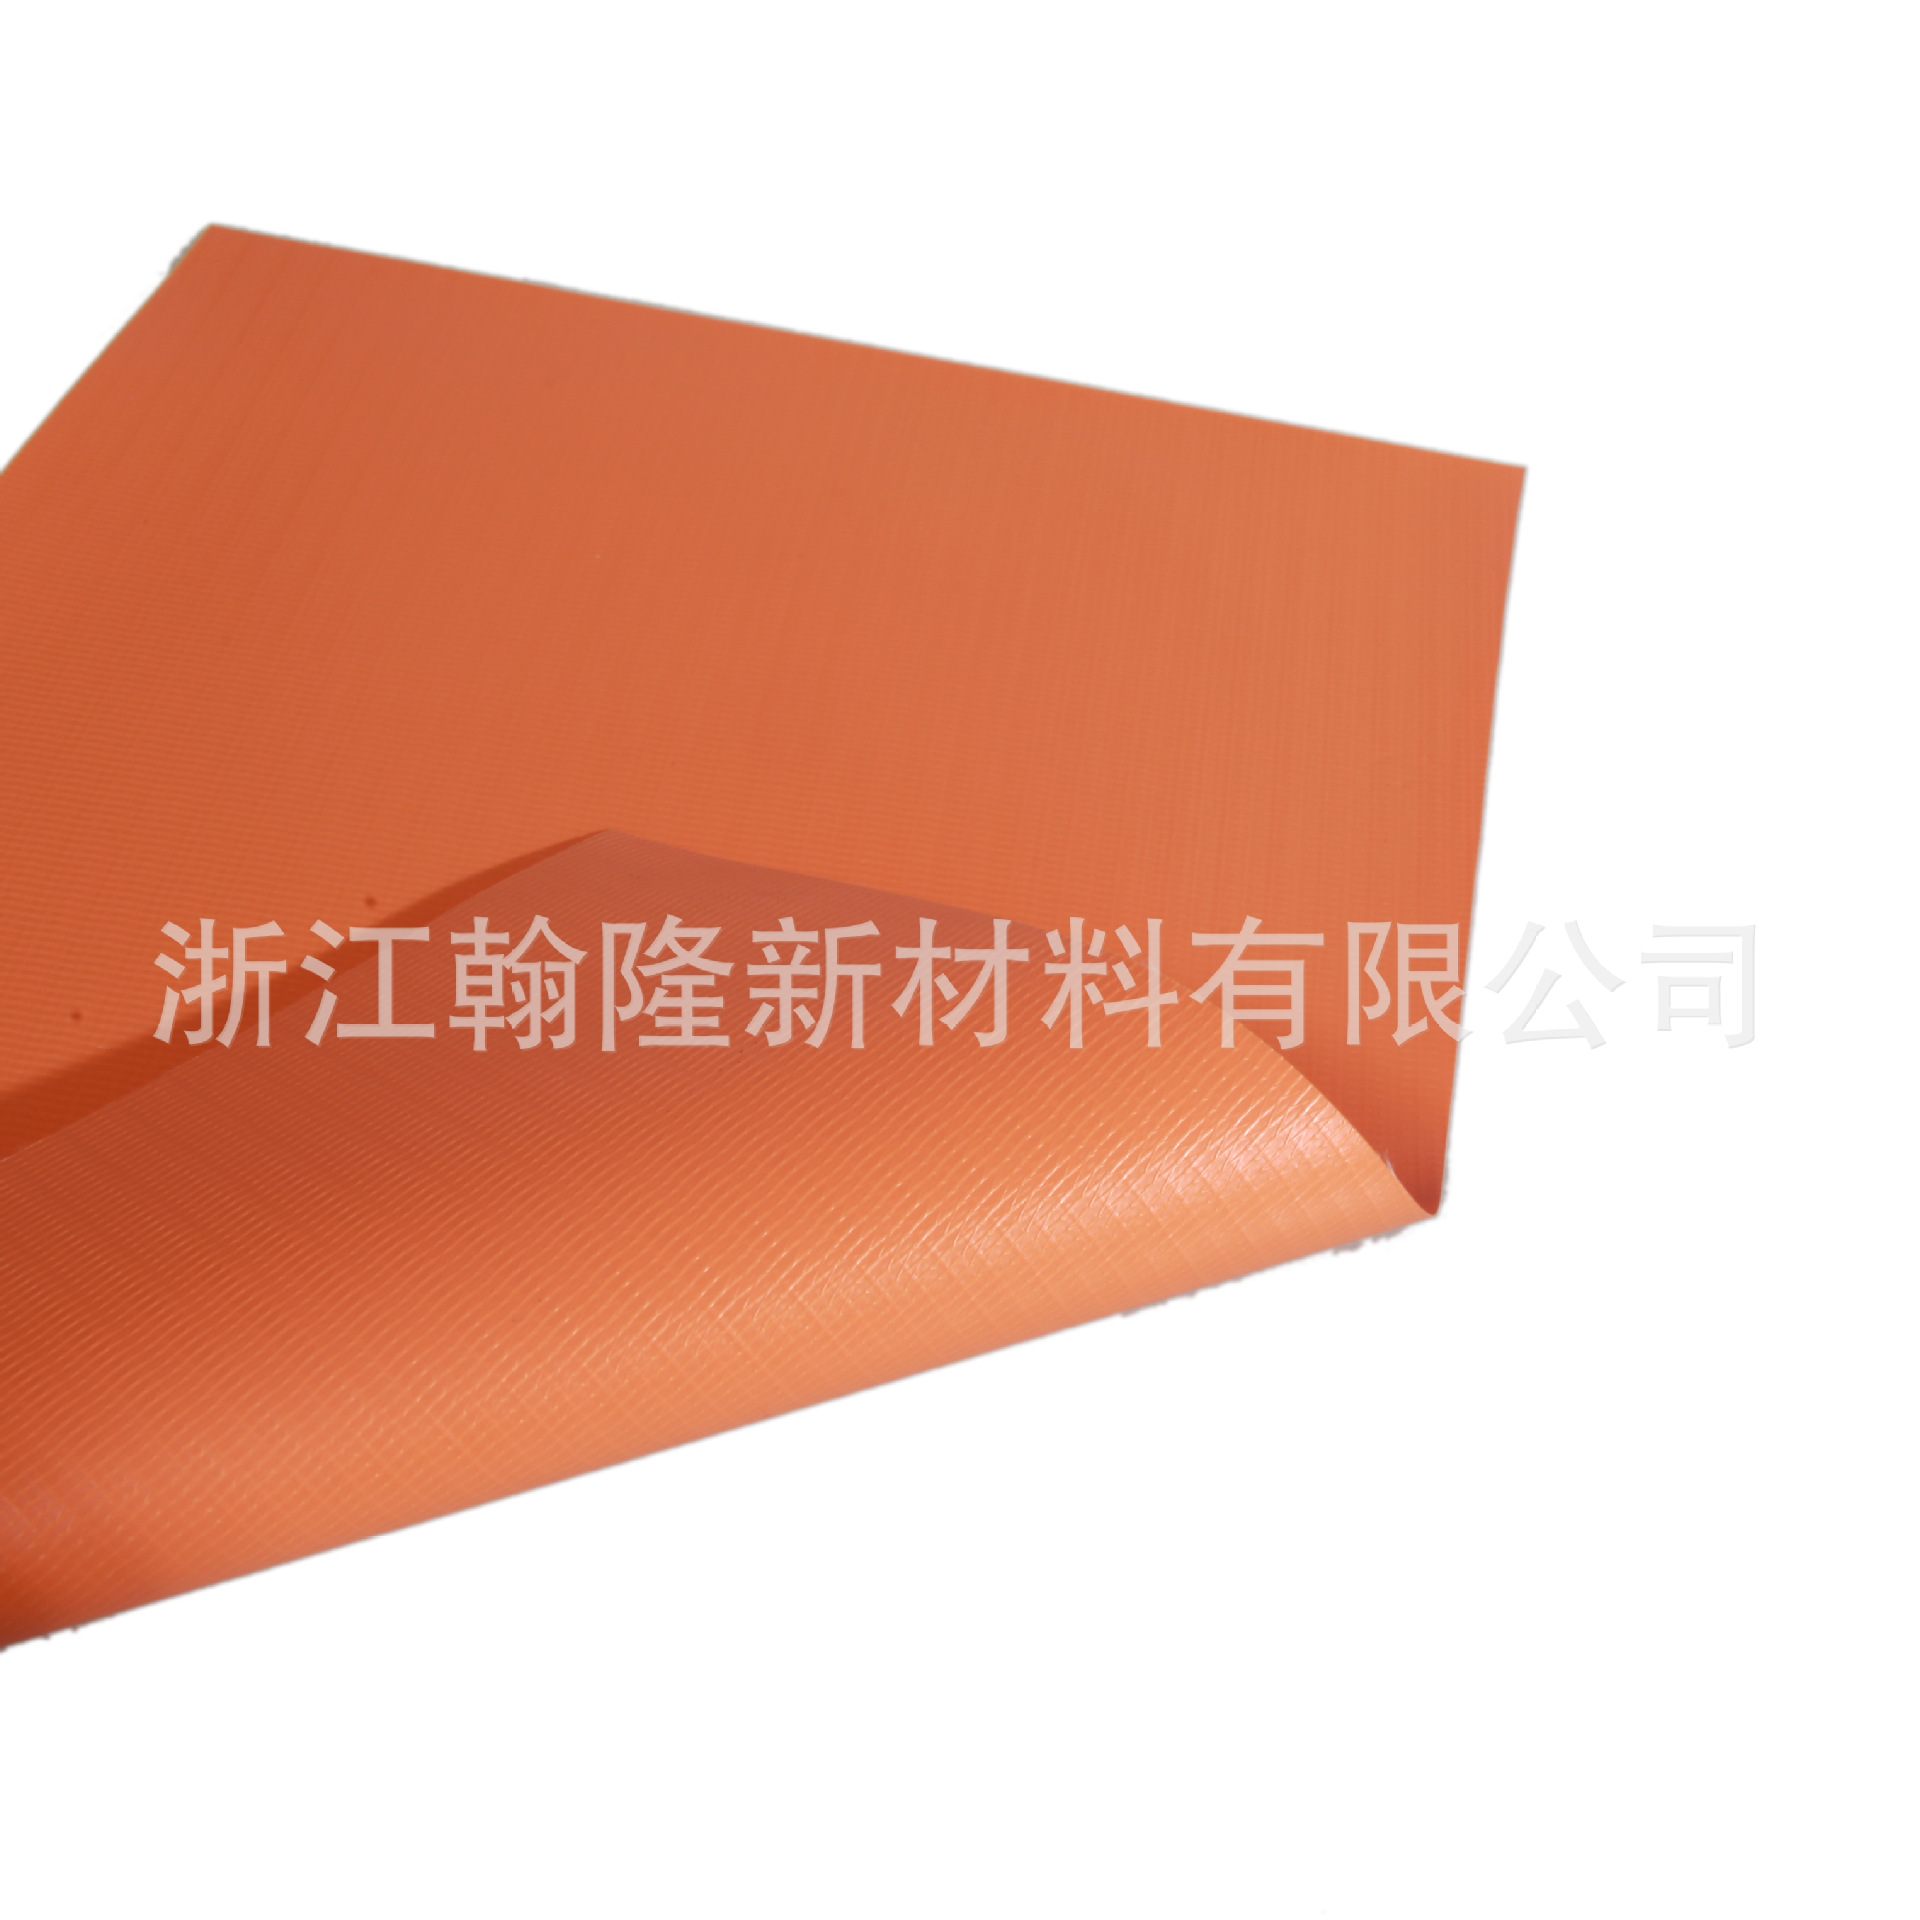 上海黄浦区帐篷防潮垫PVC夹网布厂家定制直销价格 翰隆新材料